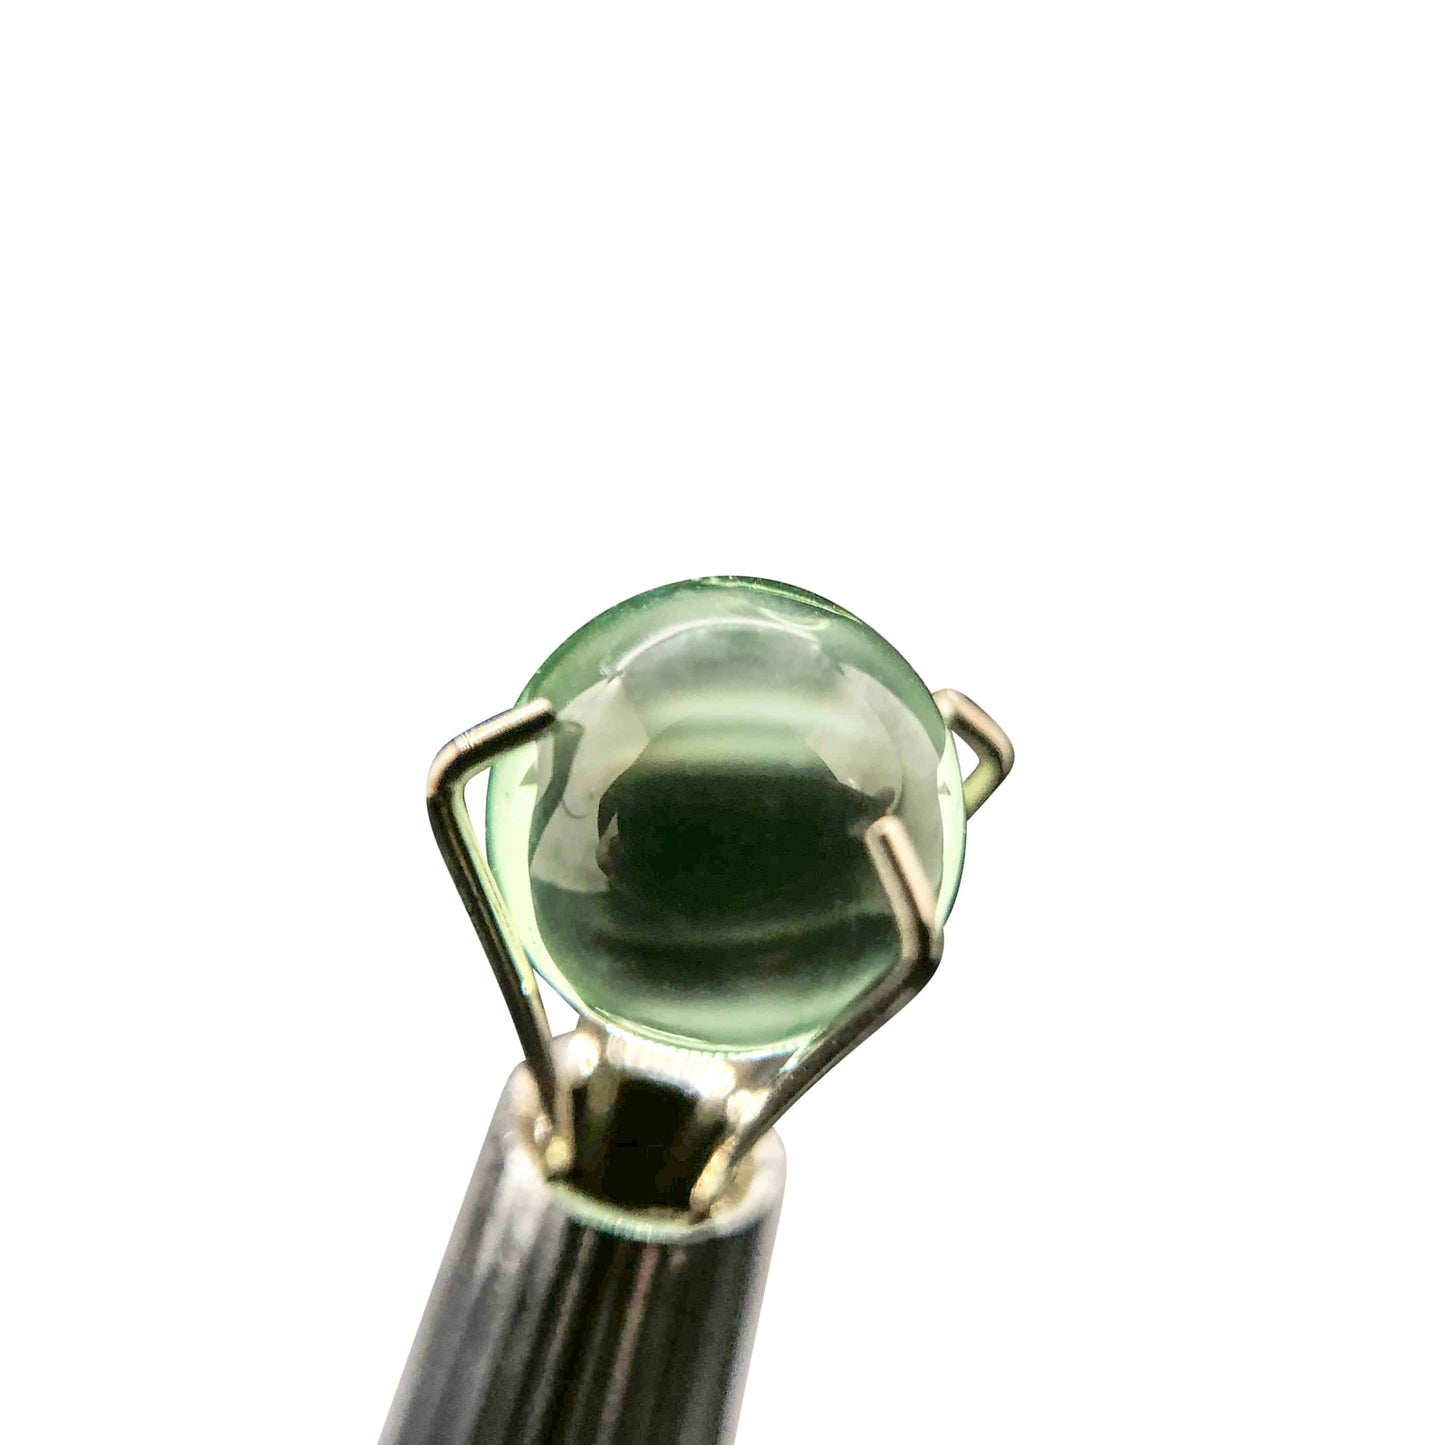 6mm Emerald Green Sapphire Terp Pearls - OPS.com